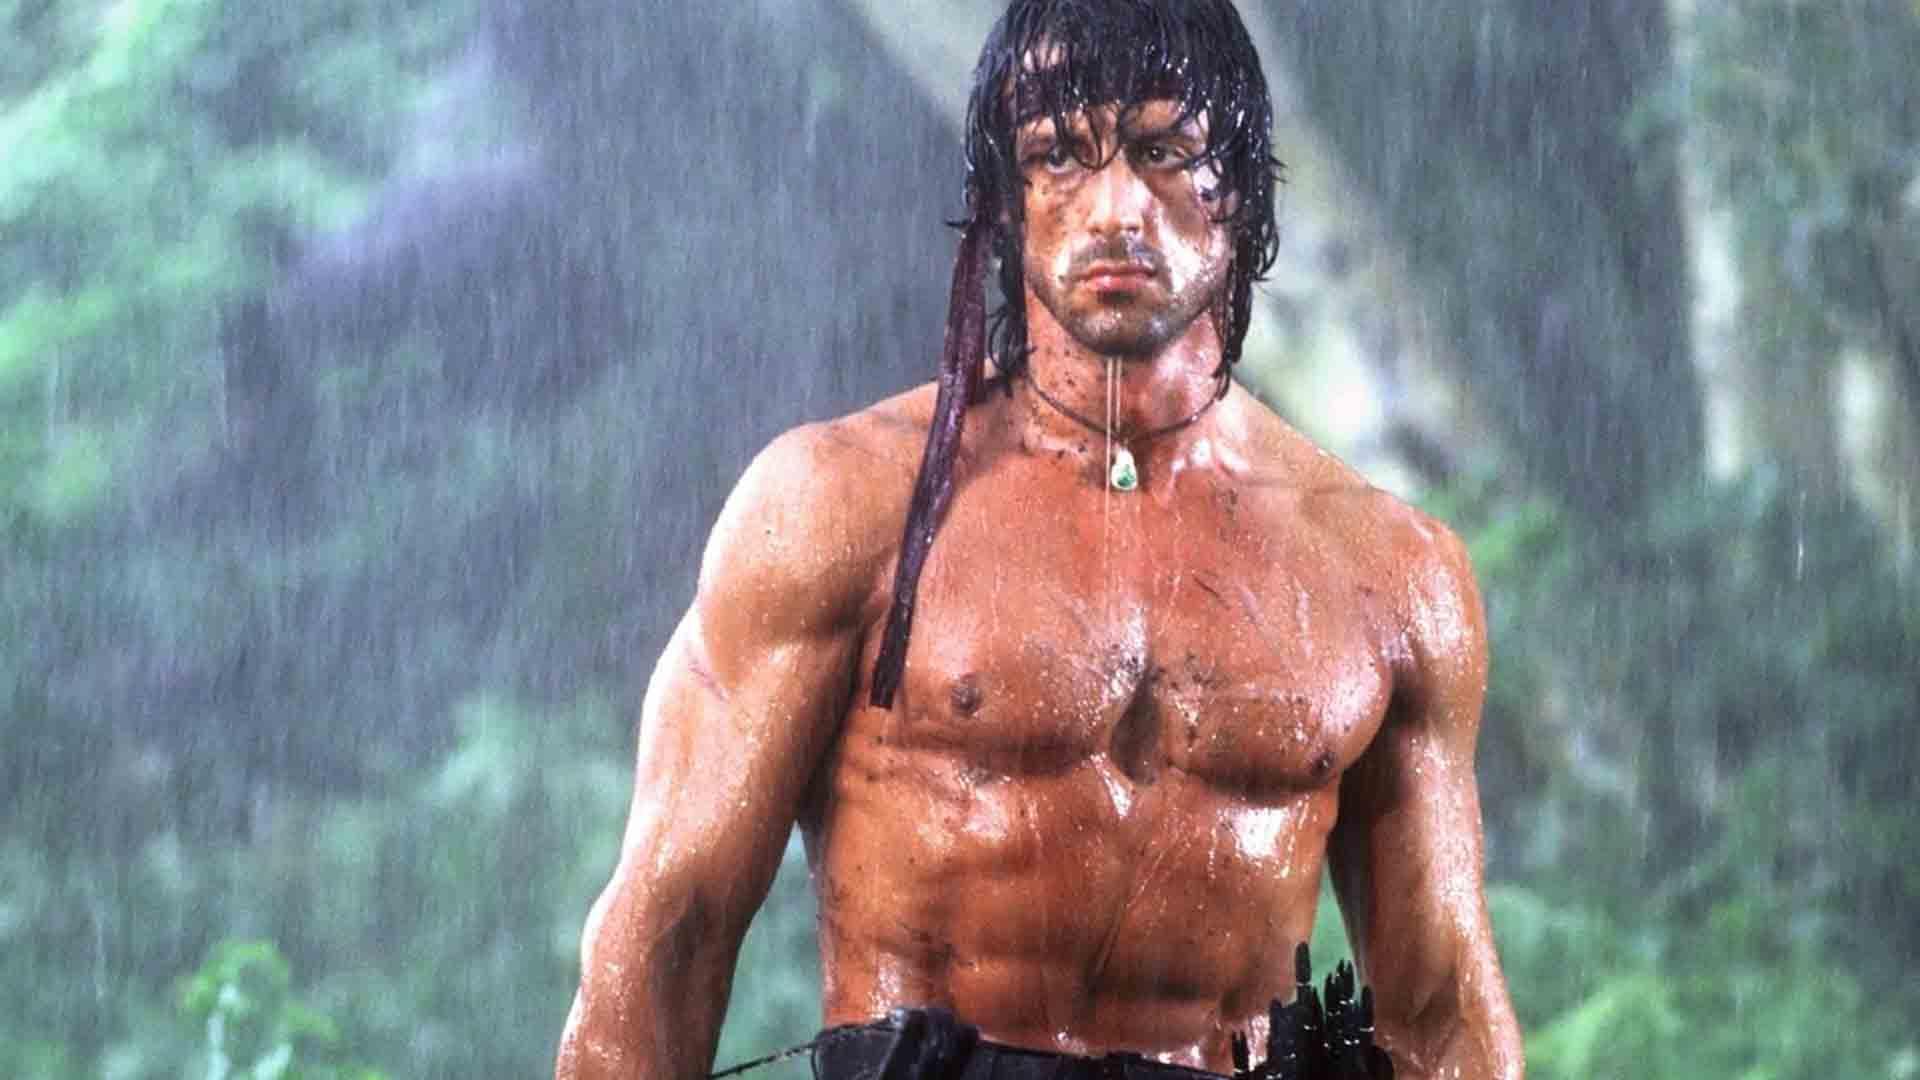 سیلوستر استالونه زیر باران در فیلم Rambo: First Blood Part II